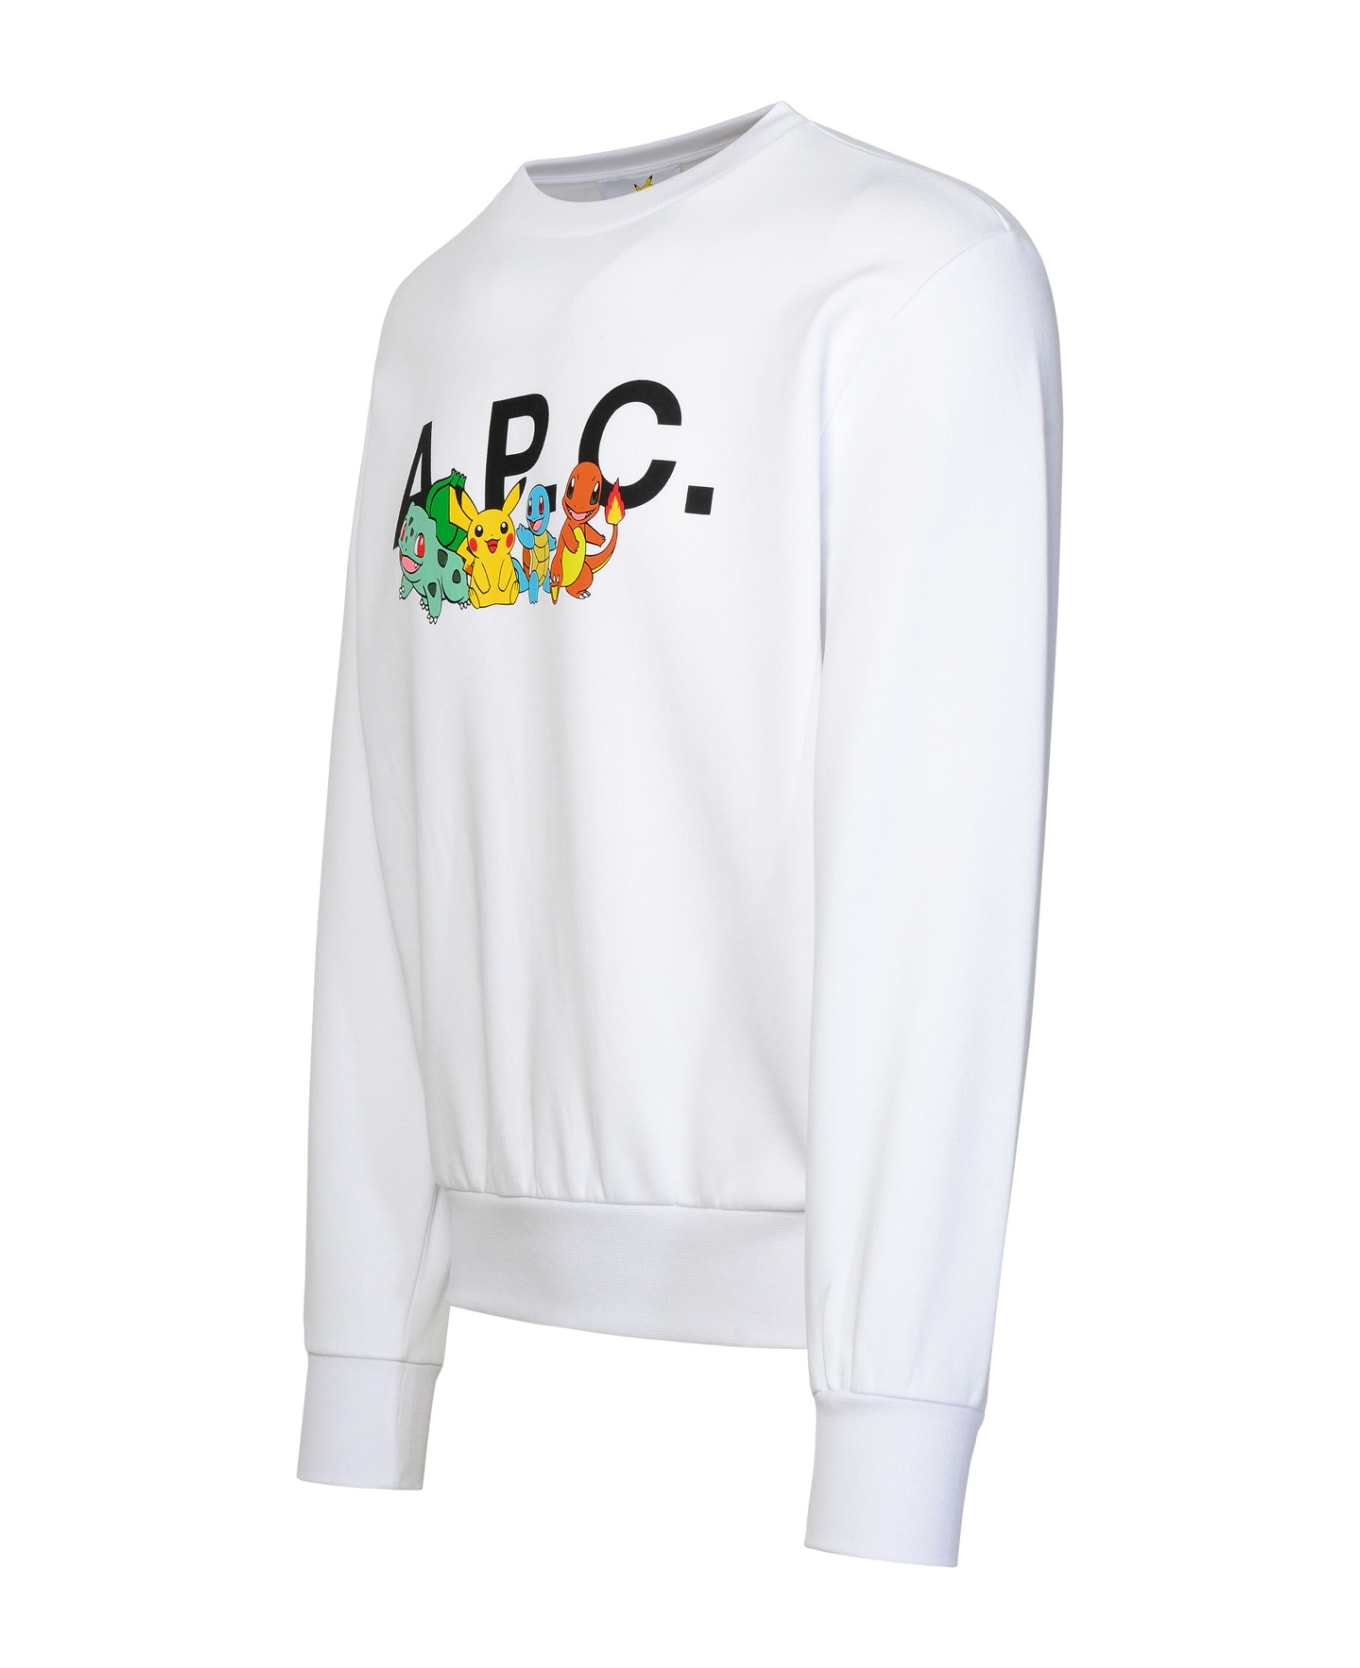 A.P.C. 'pokémon The Crew' White Cotton Sweatshirt - White